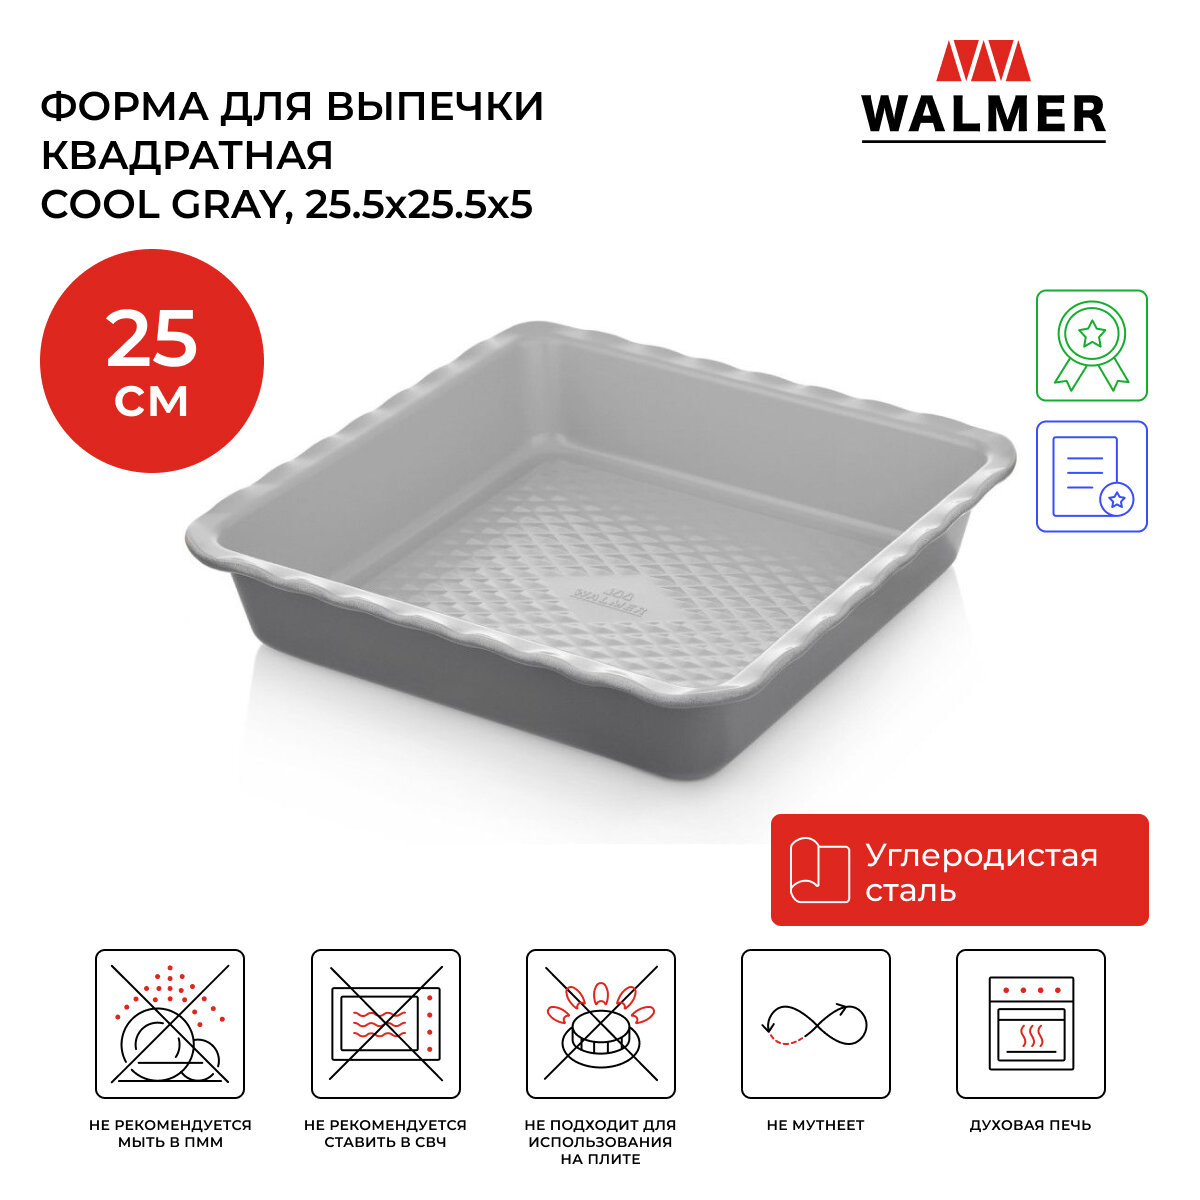 Форма для выпечки квадратная Walmer Cool Gray 25.5х25.5х5 см цвет серый